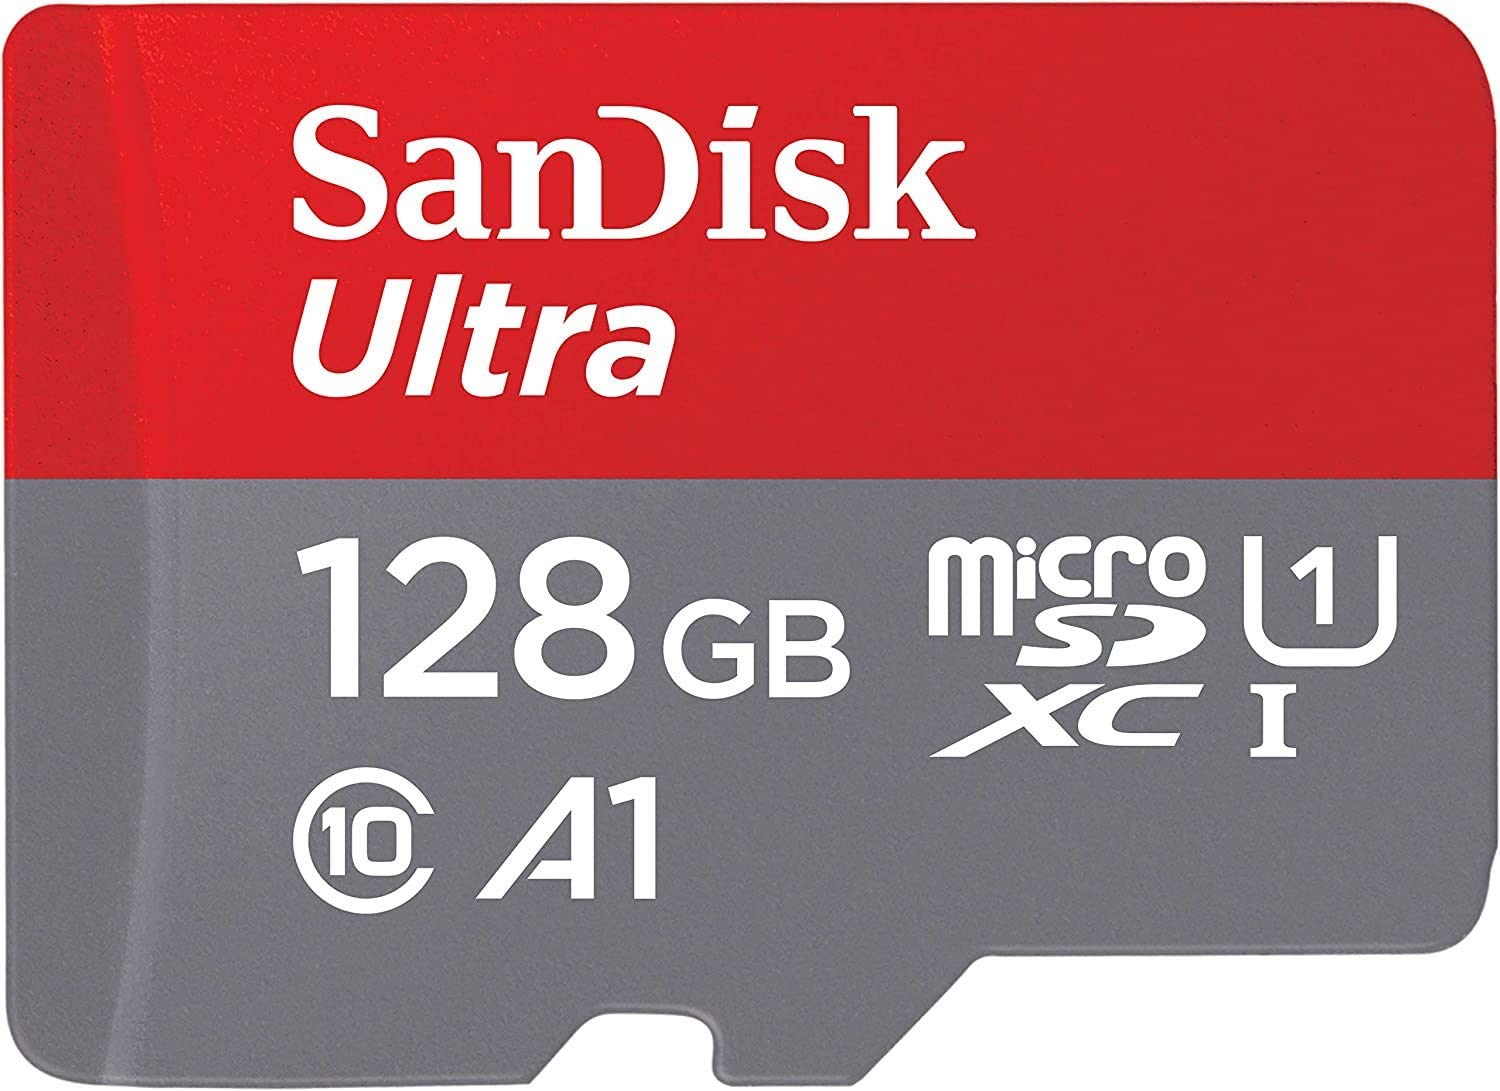 Sandisk Ultra 128 Render Cropped